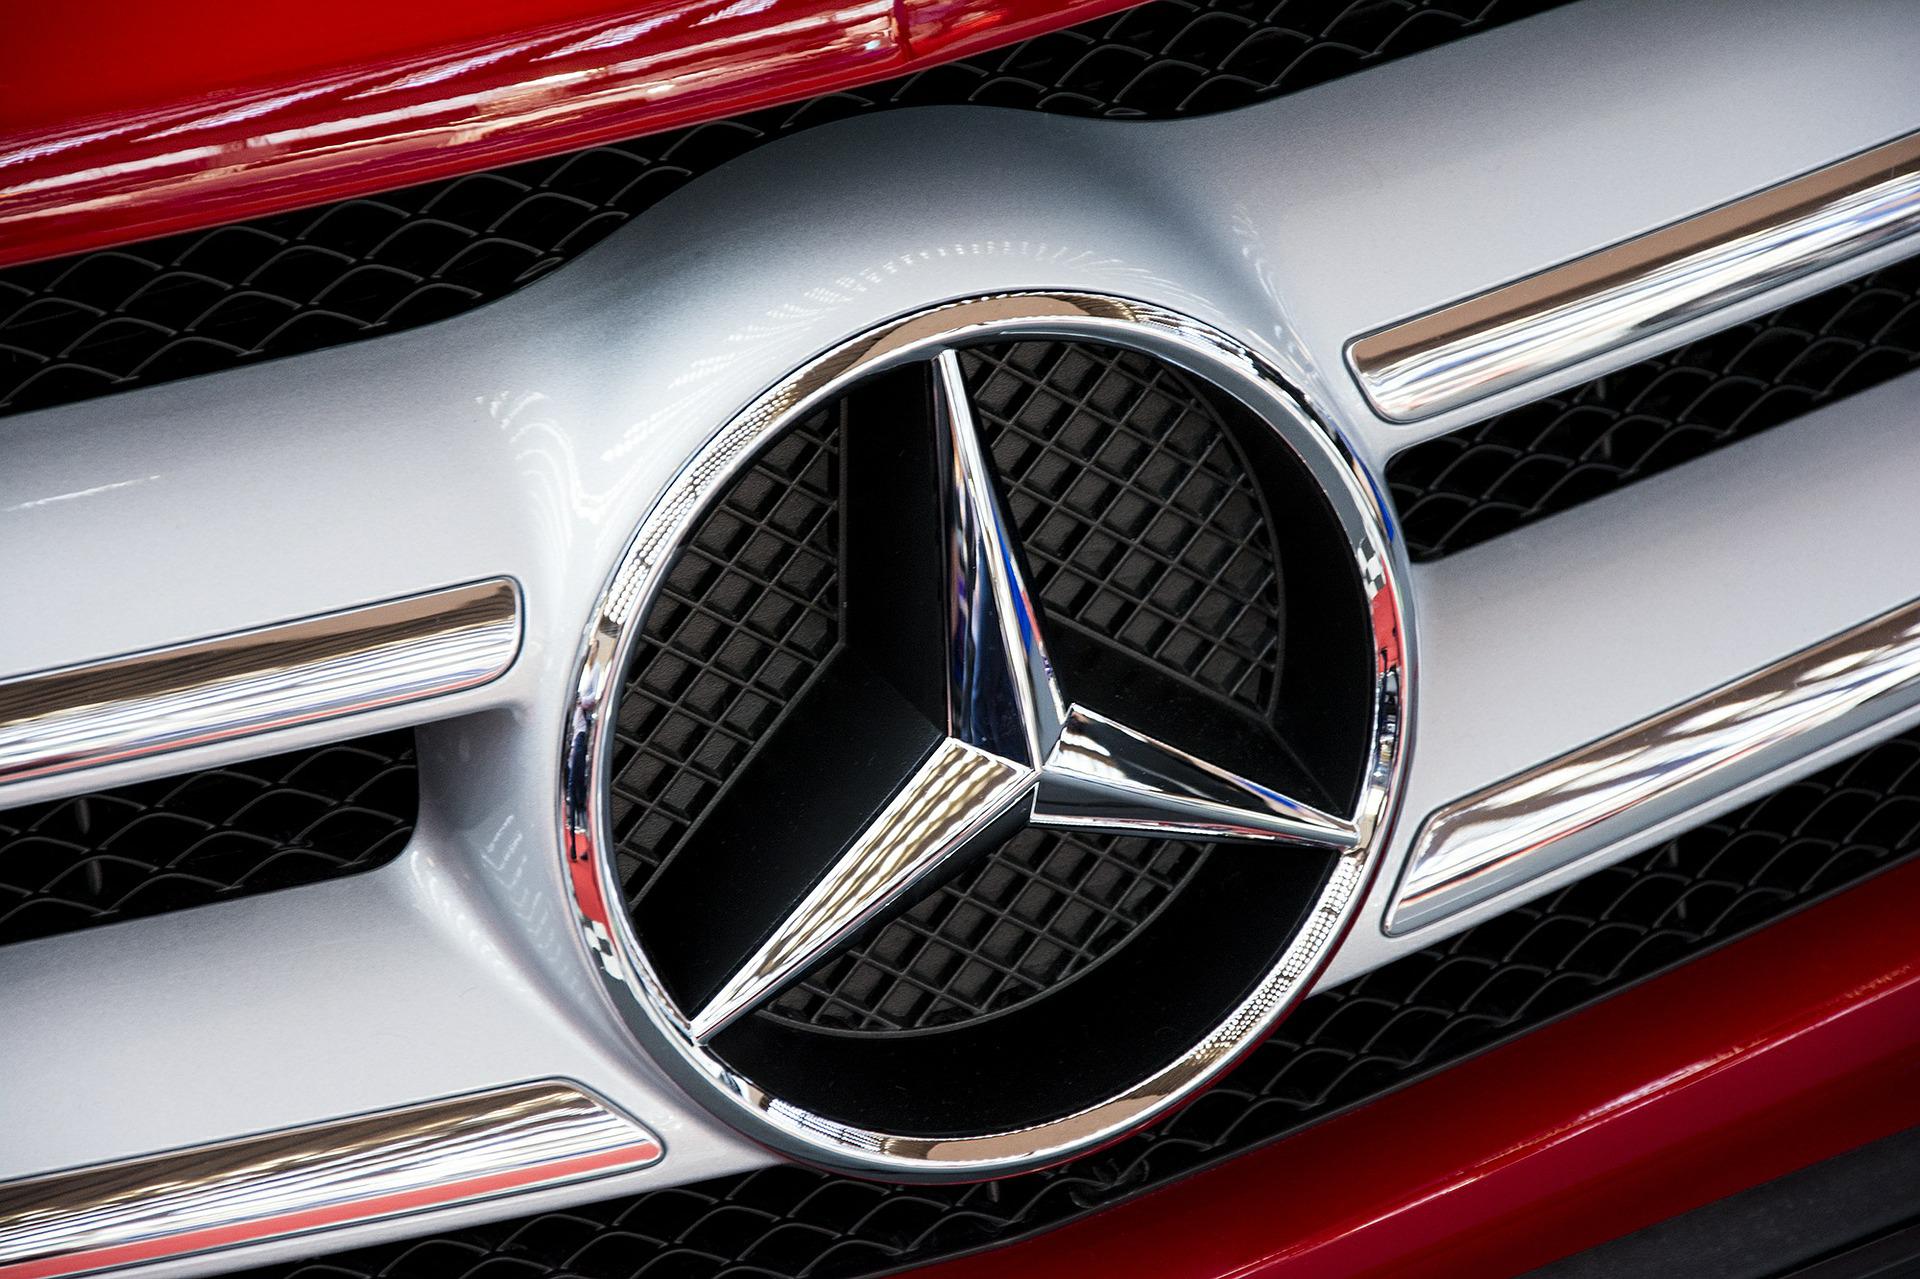 Preuzimanje Mercedesa od strane kineskih investitora biće osujećeno